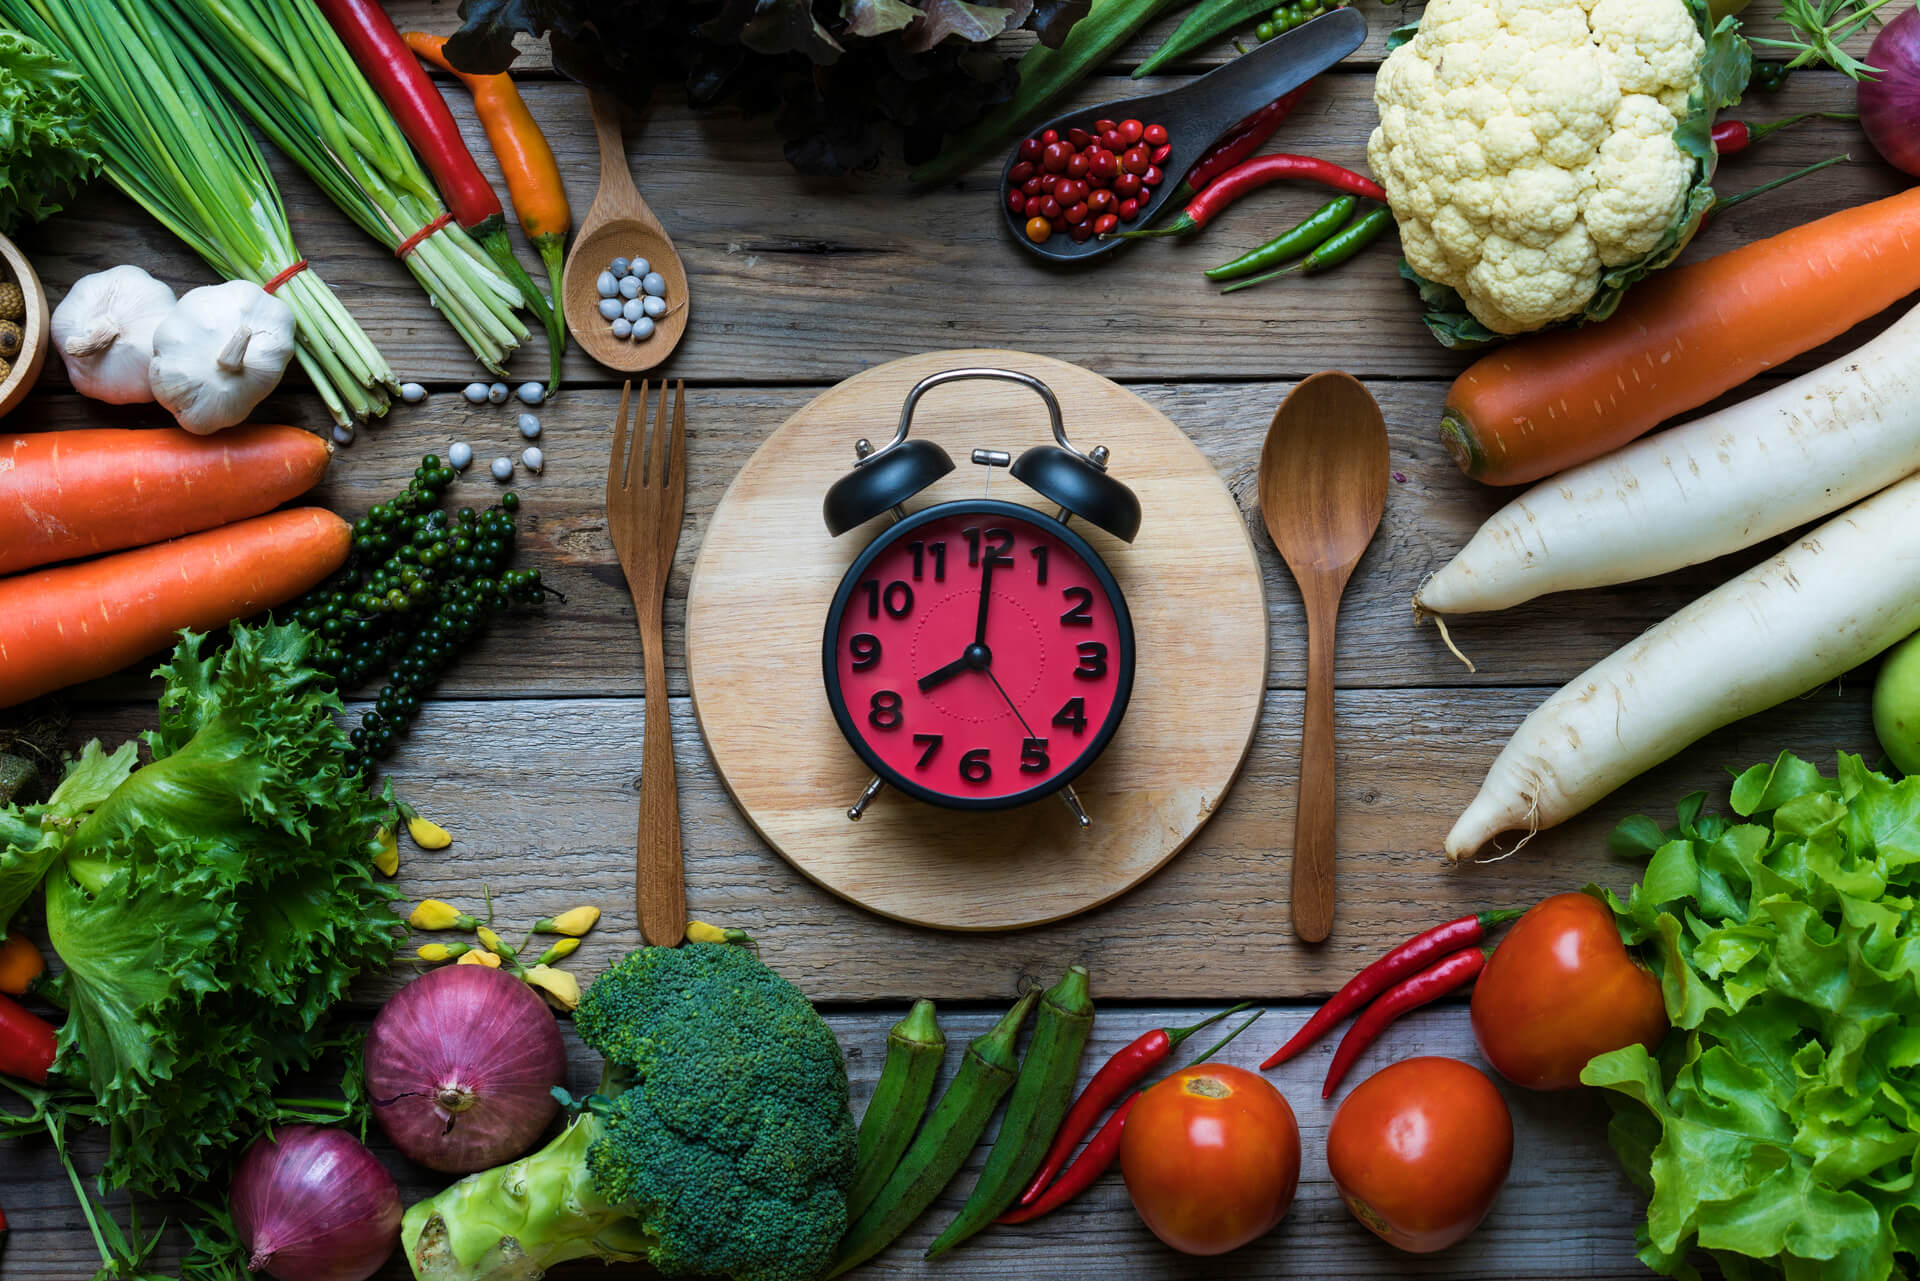 Crono-nutrizione (dieta dell'orologio): regime alimentare basato sui ritmi del metabolismo